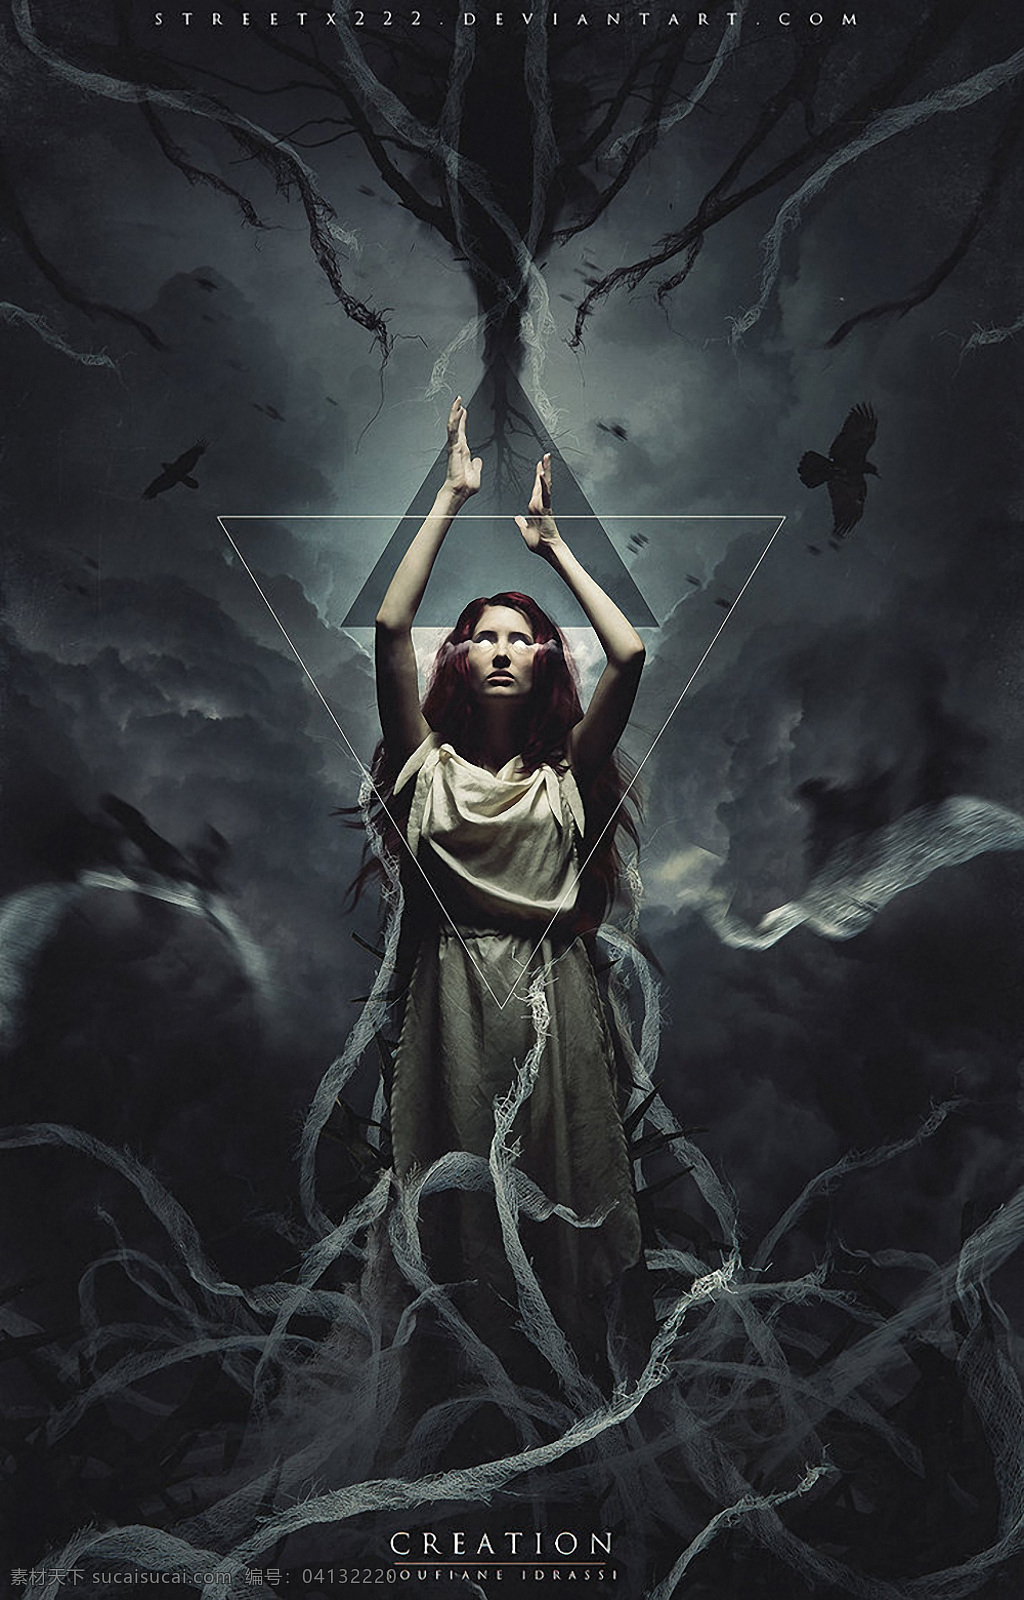 祈祷的巫神 壁纸 游戏 女人 囚禁 暗黑 合成 恐怖 巫女 特技 特效 巫神 创意 祈祷 背景 图 国外广告设计